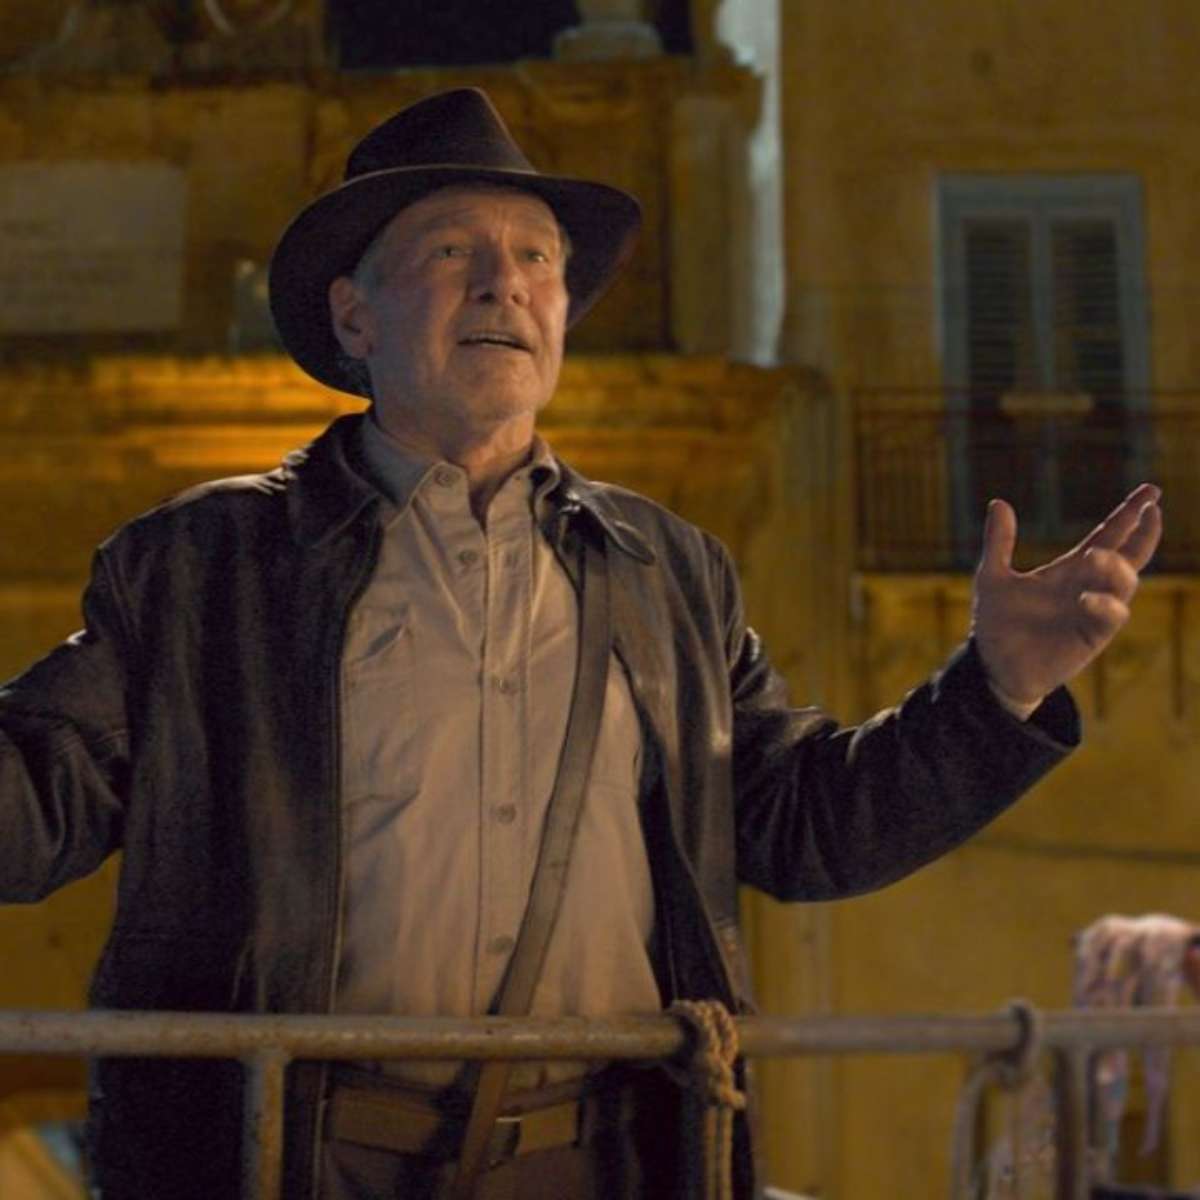 O Jovem Indiana Jones: elenco da 2ª temporada - AdoroCinema